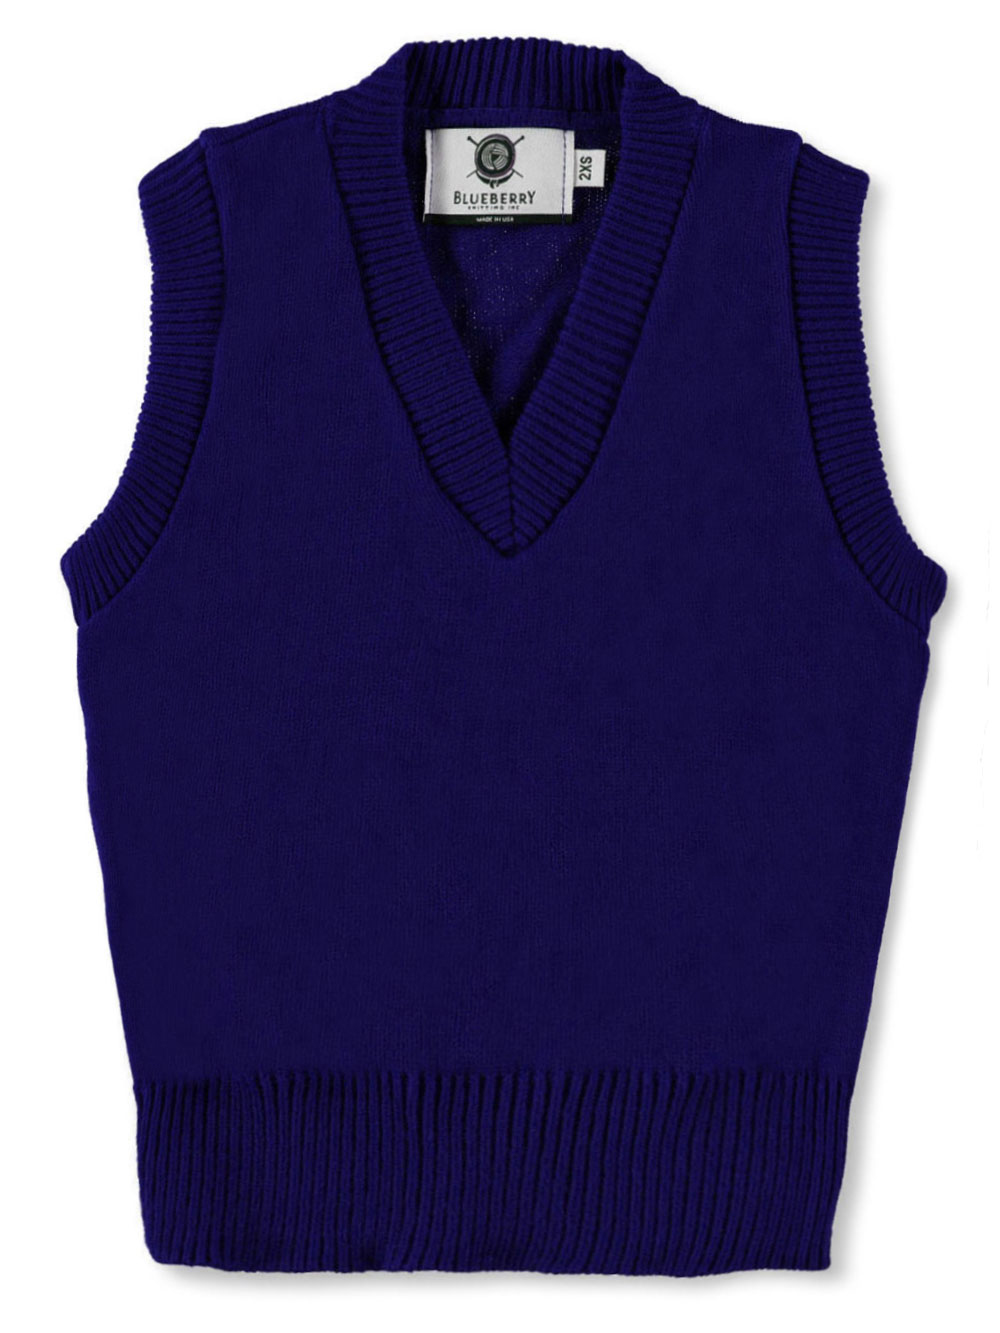 Blueberry Knitting Unisex V-Neck Sweater Vest (Sizes S - XXL) | eBay